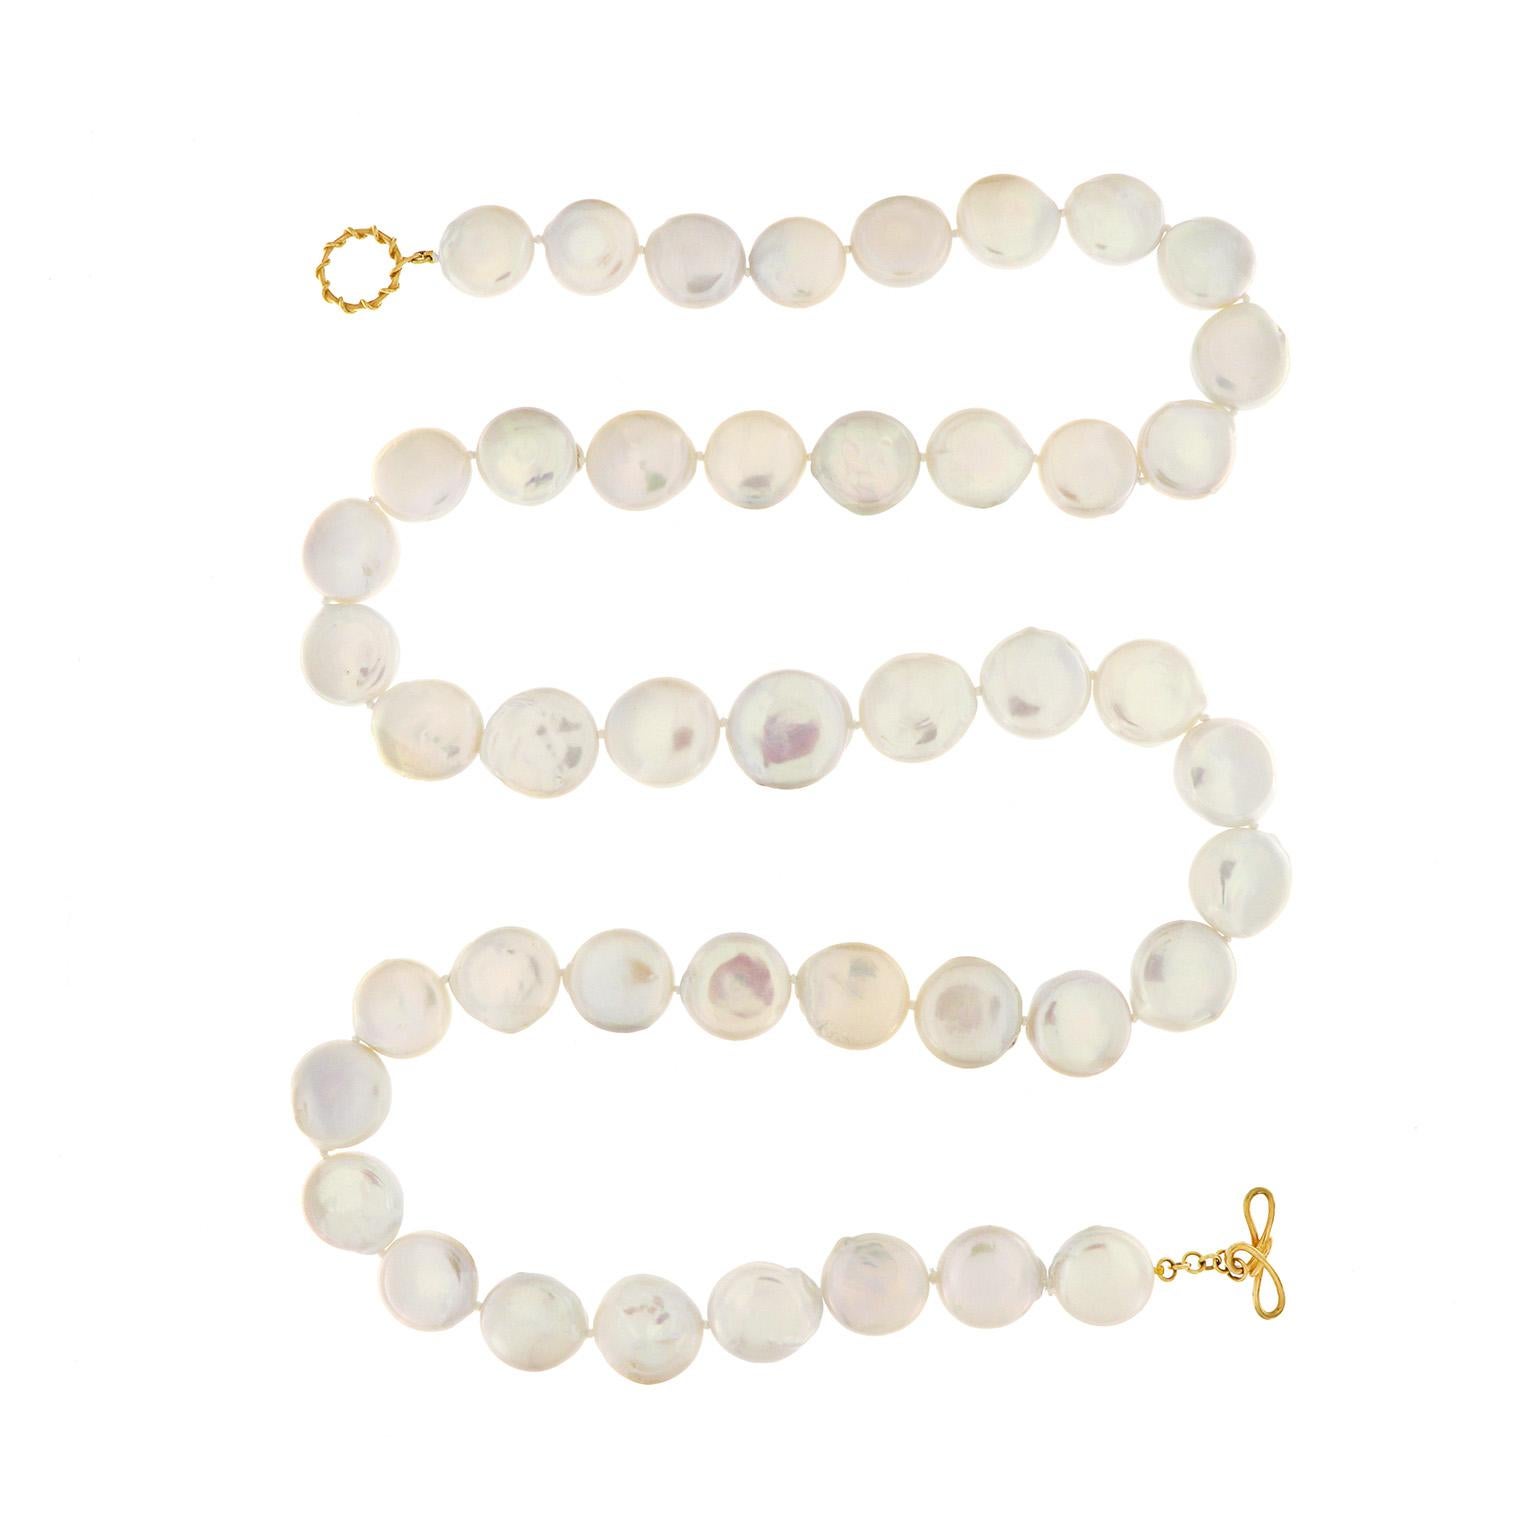 De douces nuances d'iris témoignent de la beauté des perles d'eau douce de ce collier. Sculptées dans des pièces de monnaie, les perles reflètent de délicates couleurs lorsque la lumière tombe sur elles. Le poids total des perles rondes de 20 mm est